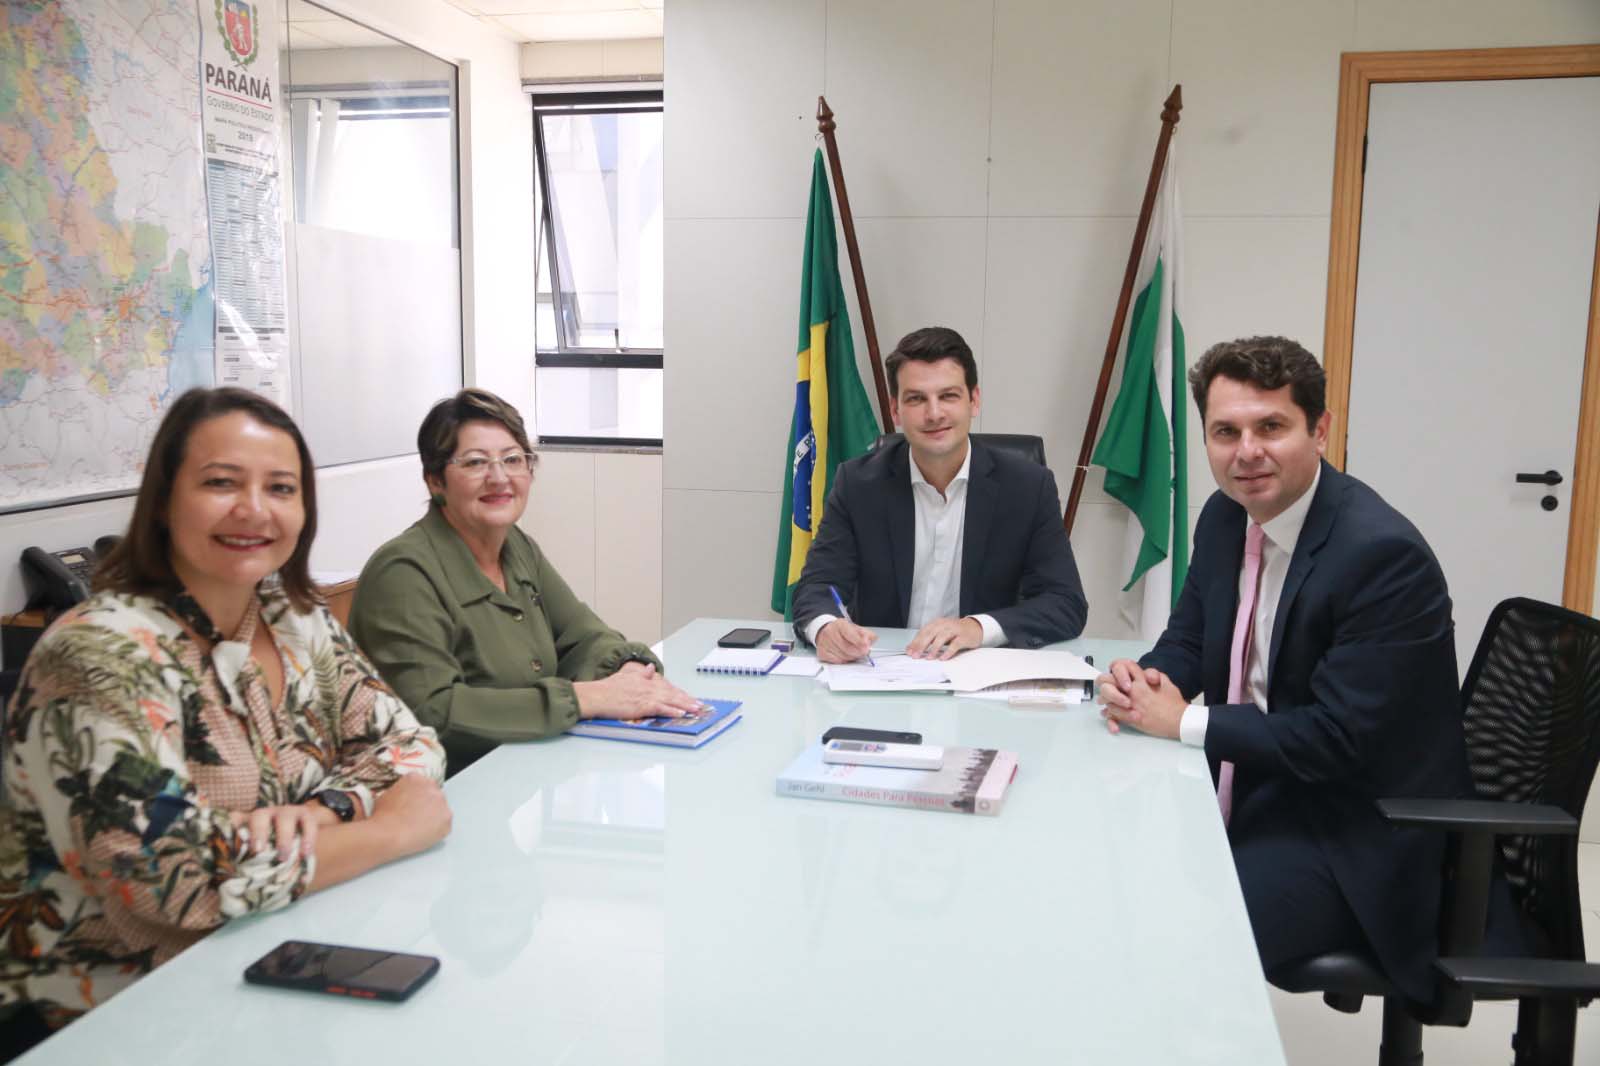 O menor município do Paraná, Jardim Olinda, com 1.309 habitantes (IBGE, 2021), está entre os beneficiados, nesta terça-feira (02), com ações de apoio ao desenvolvimento urbano do Governo do Estado, vi